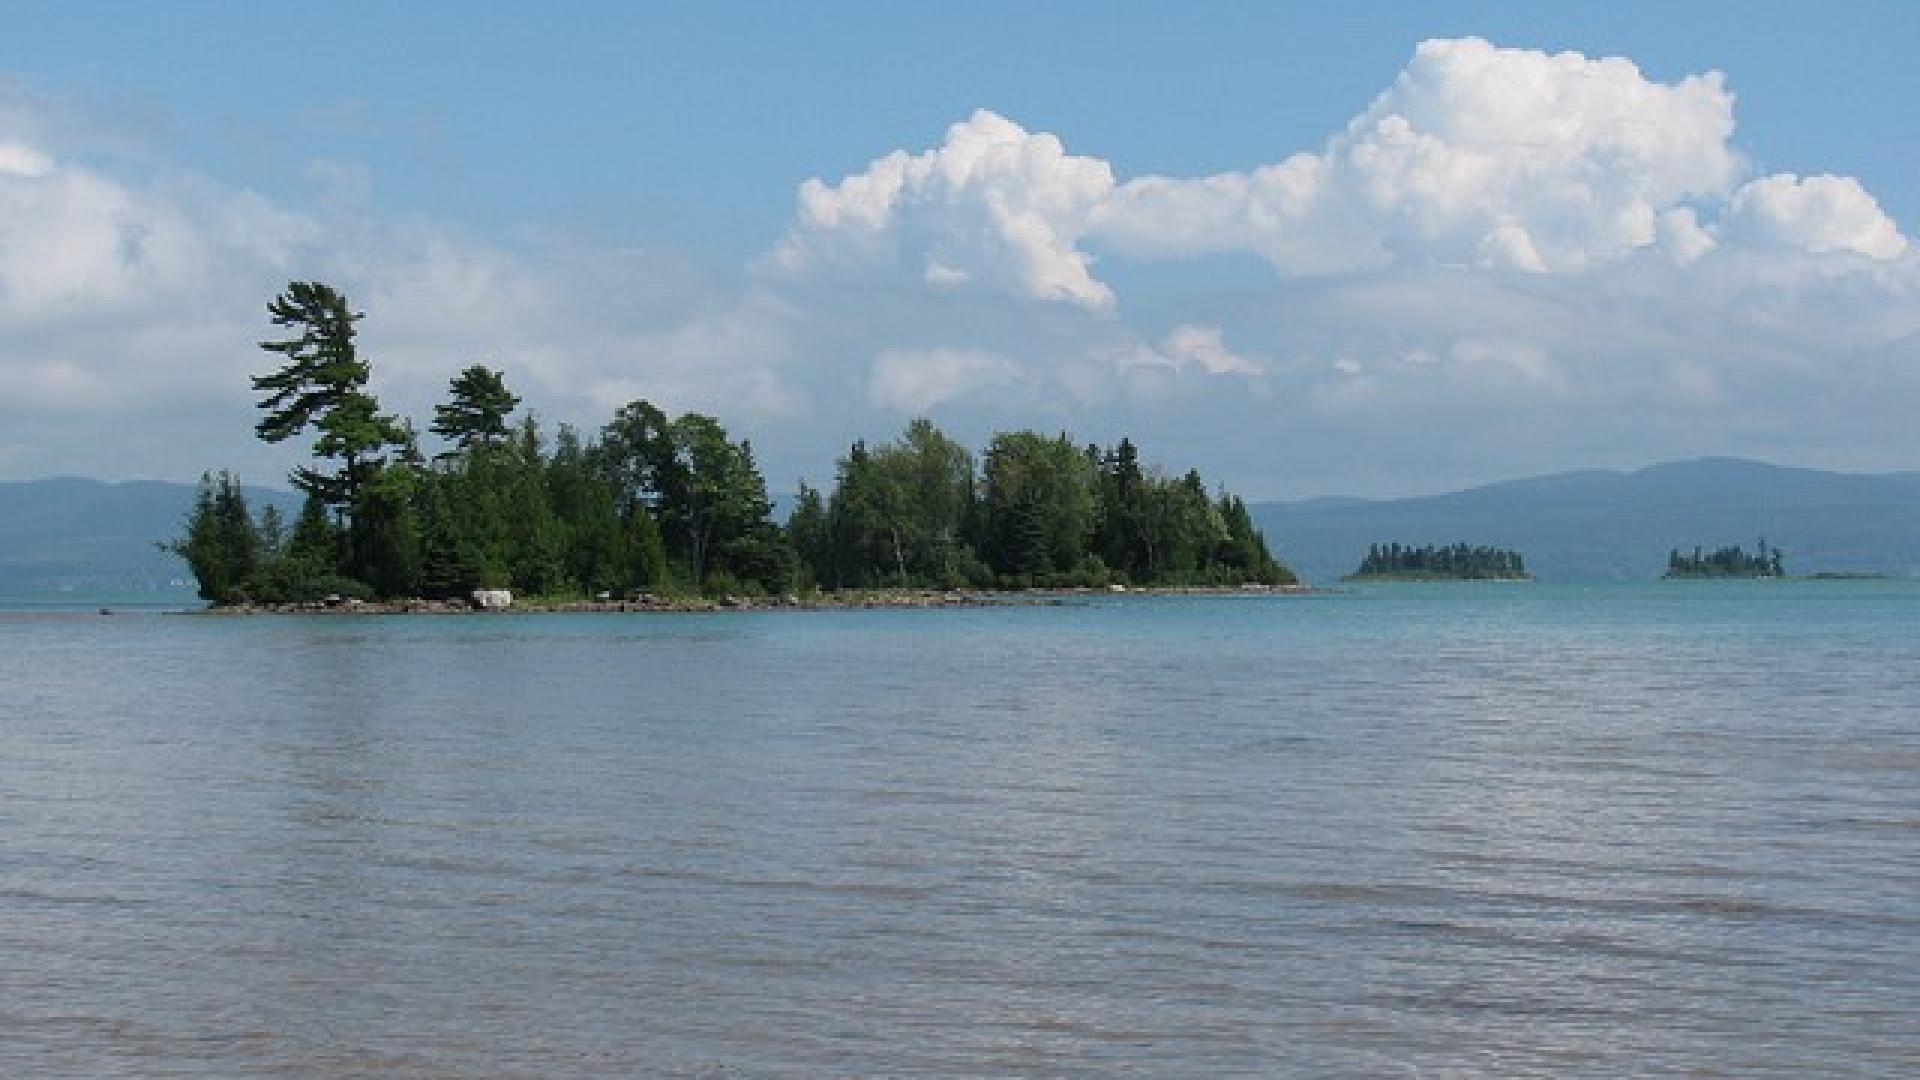 Lake Superior as seen from Batchawana Bay.